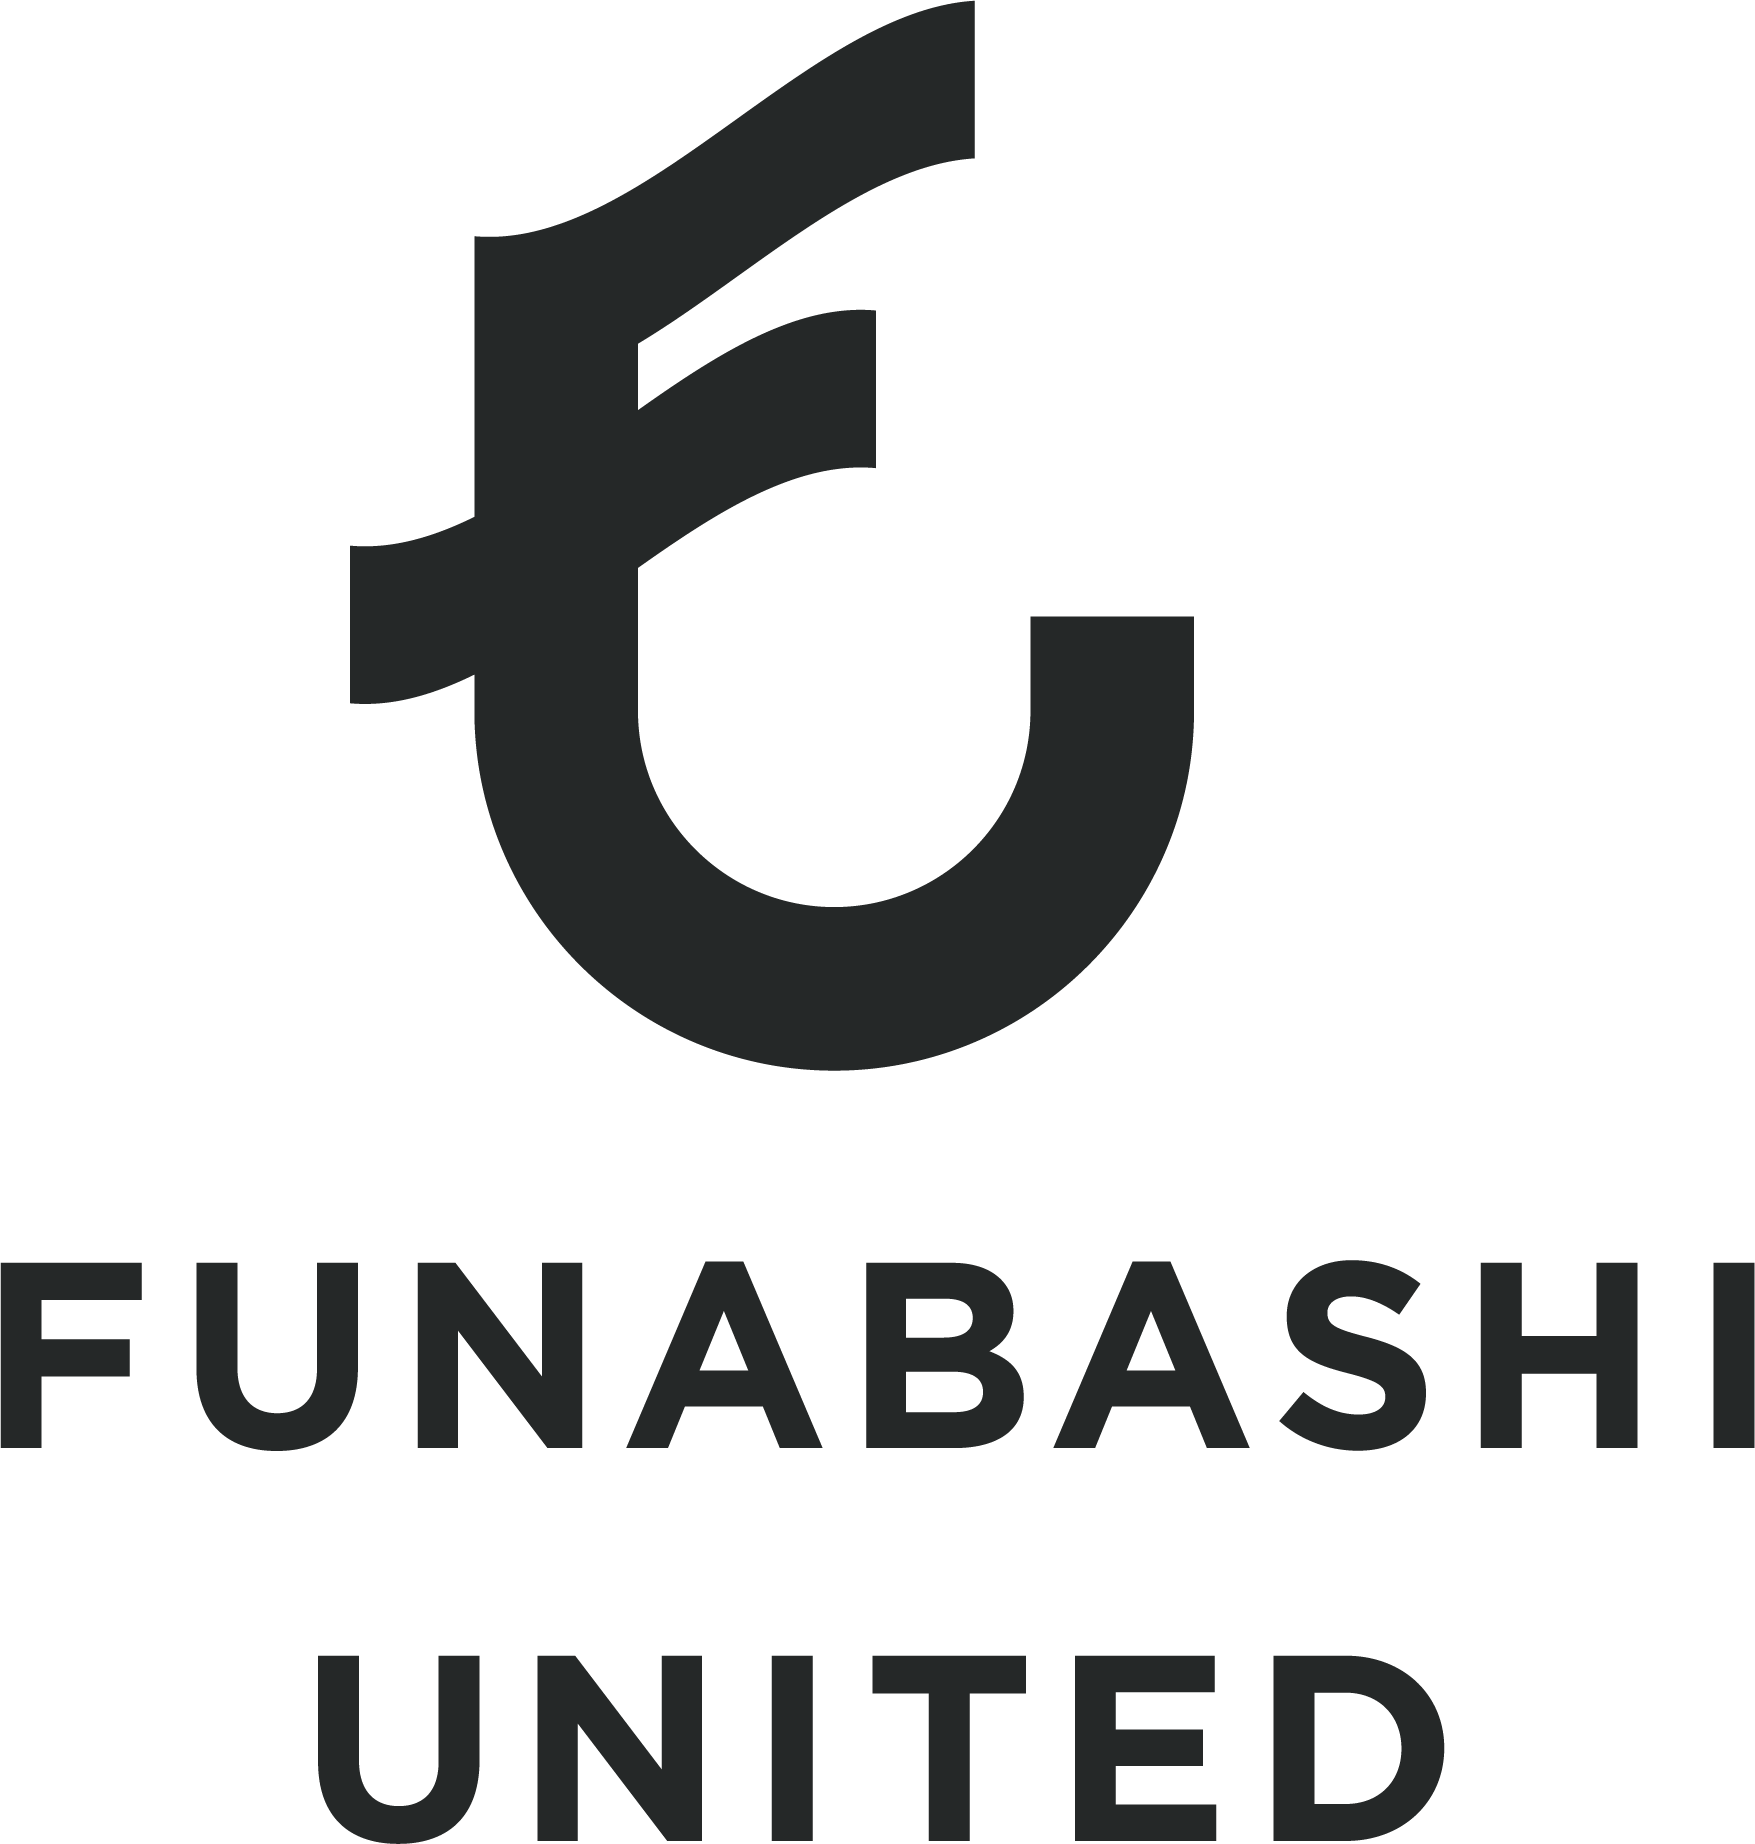 Funabashi United